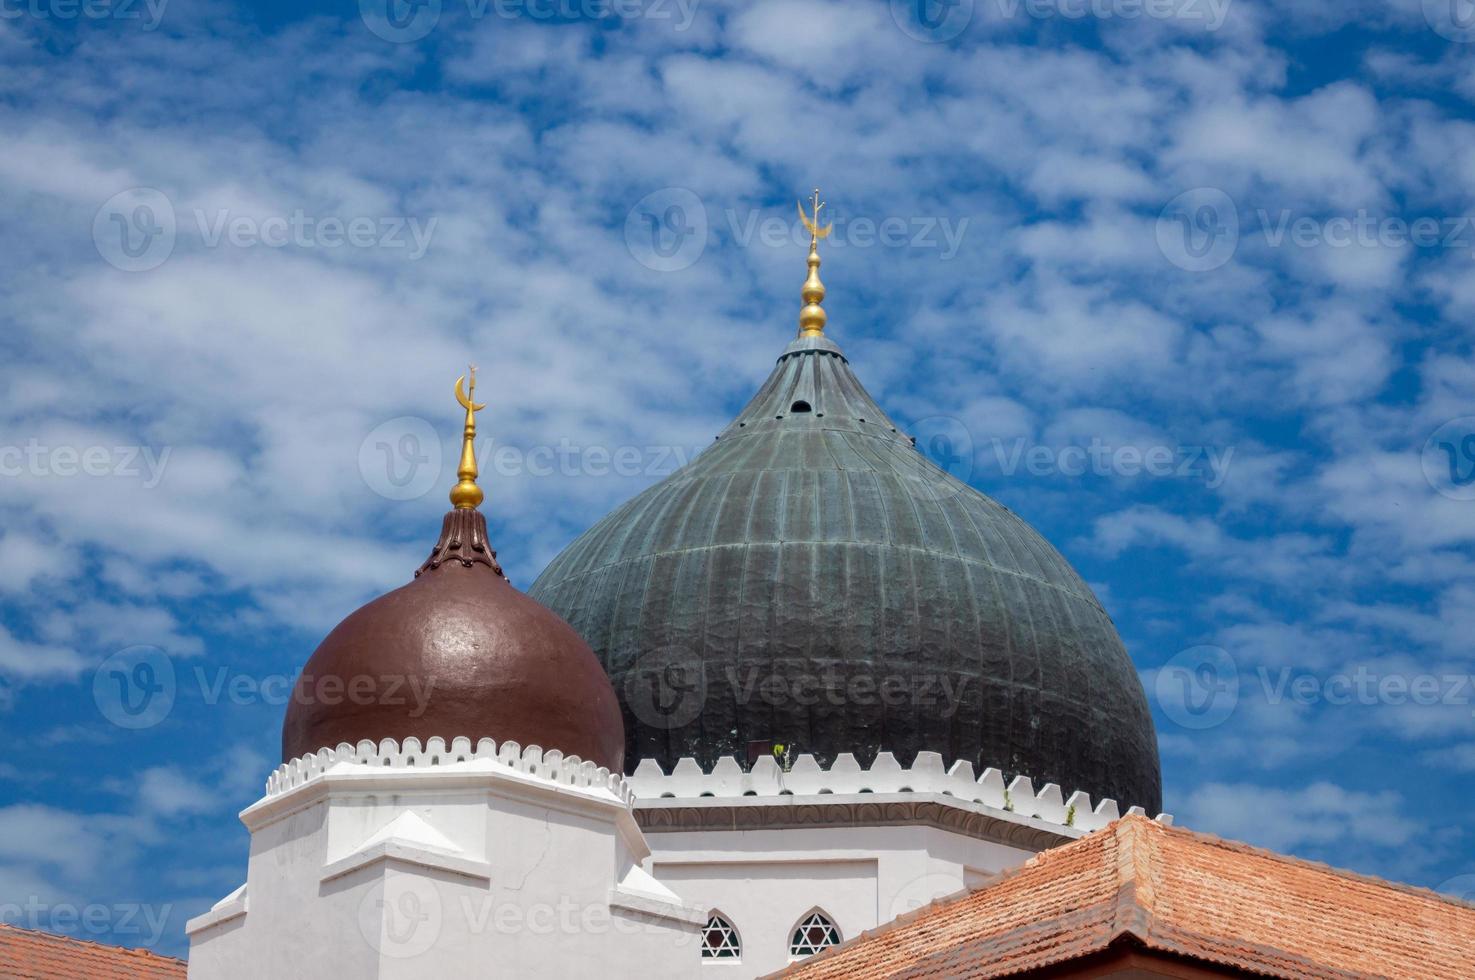 Dome at Masjid Kapitan Keling photo